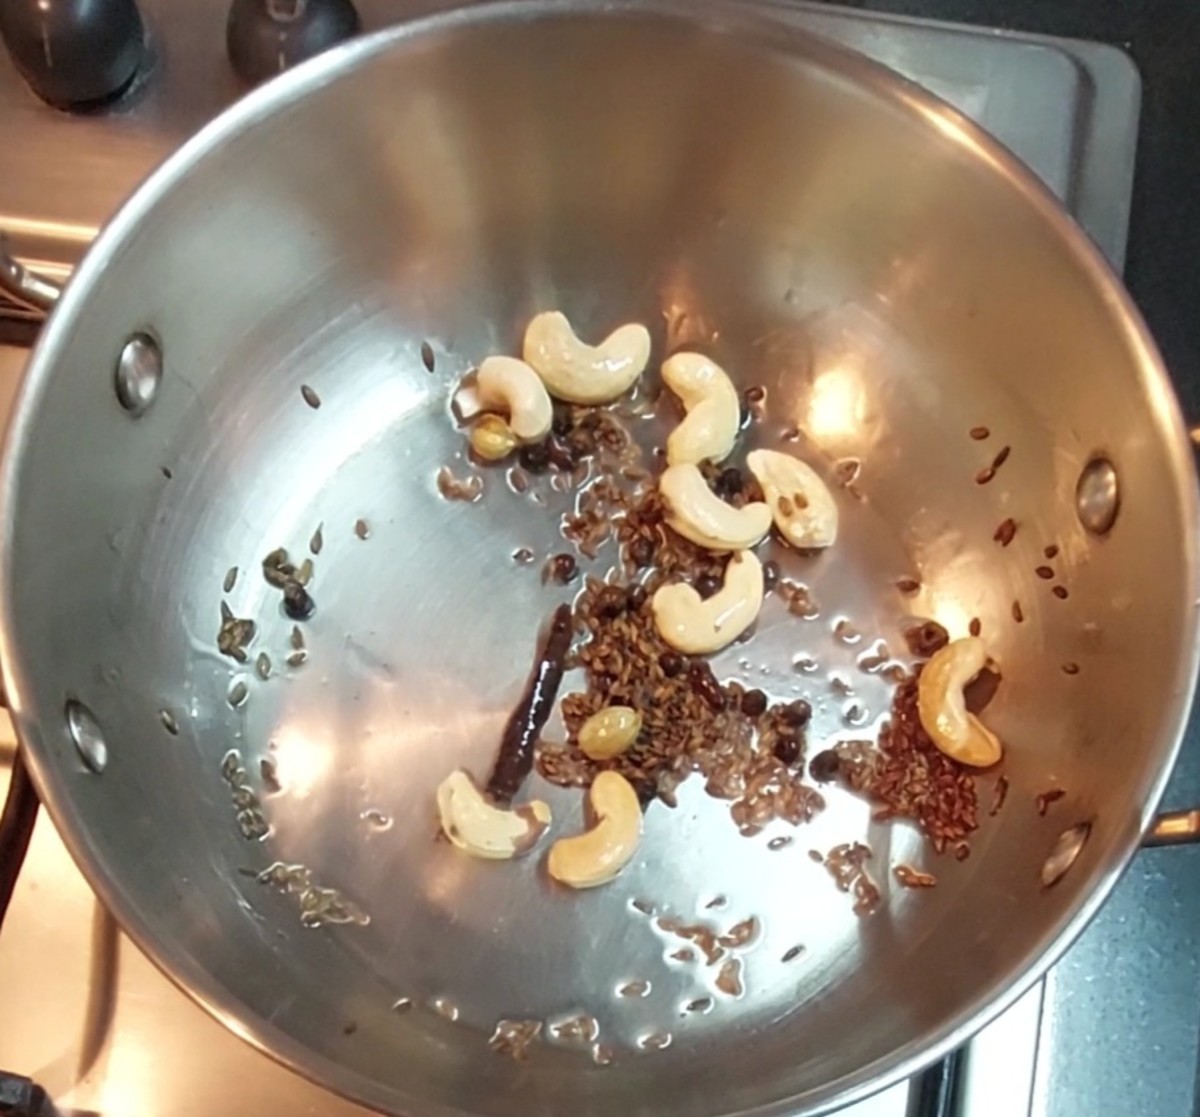 Add 8-10 cashews and fry till golden brown.